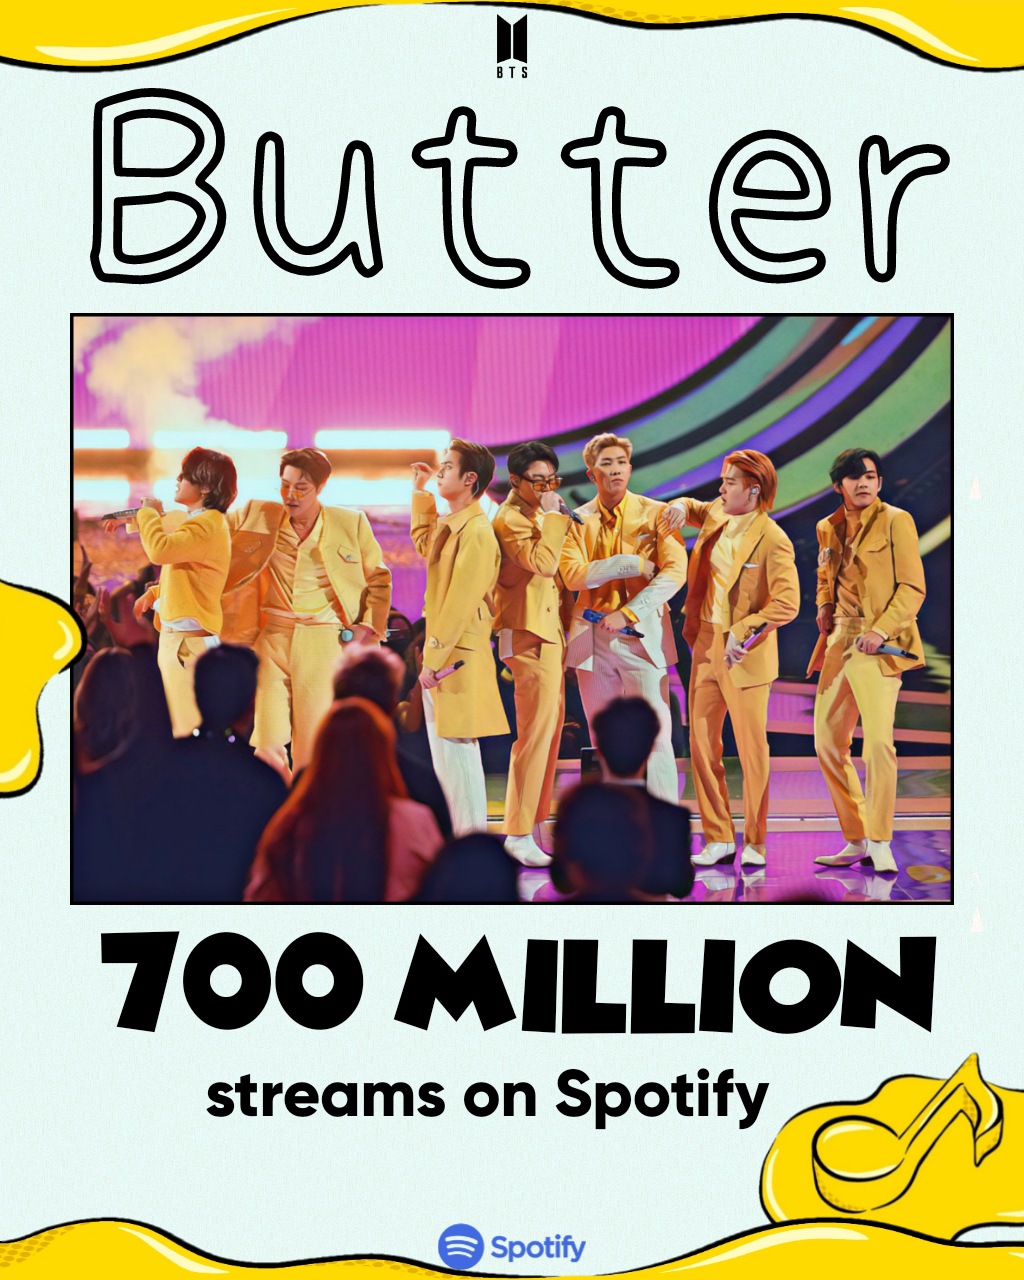 เพลง Butter ได้ยอดสตรีมรวม 700 ล้านสตรีมบน Spotify เป็นที่เรียบร้อย!